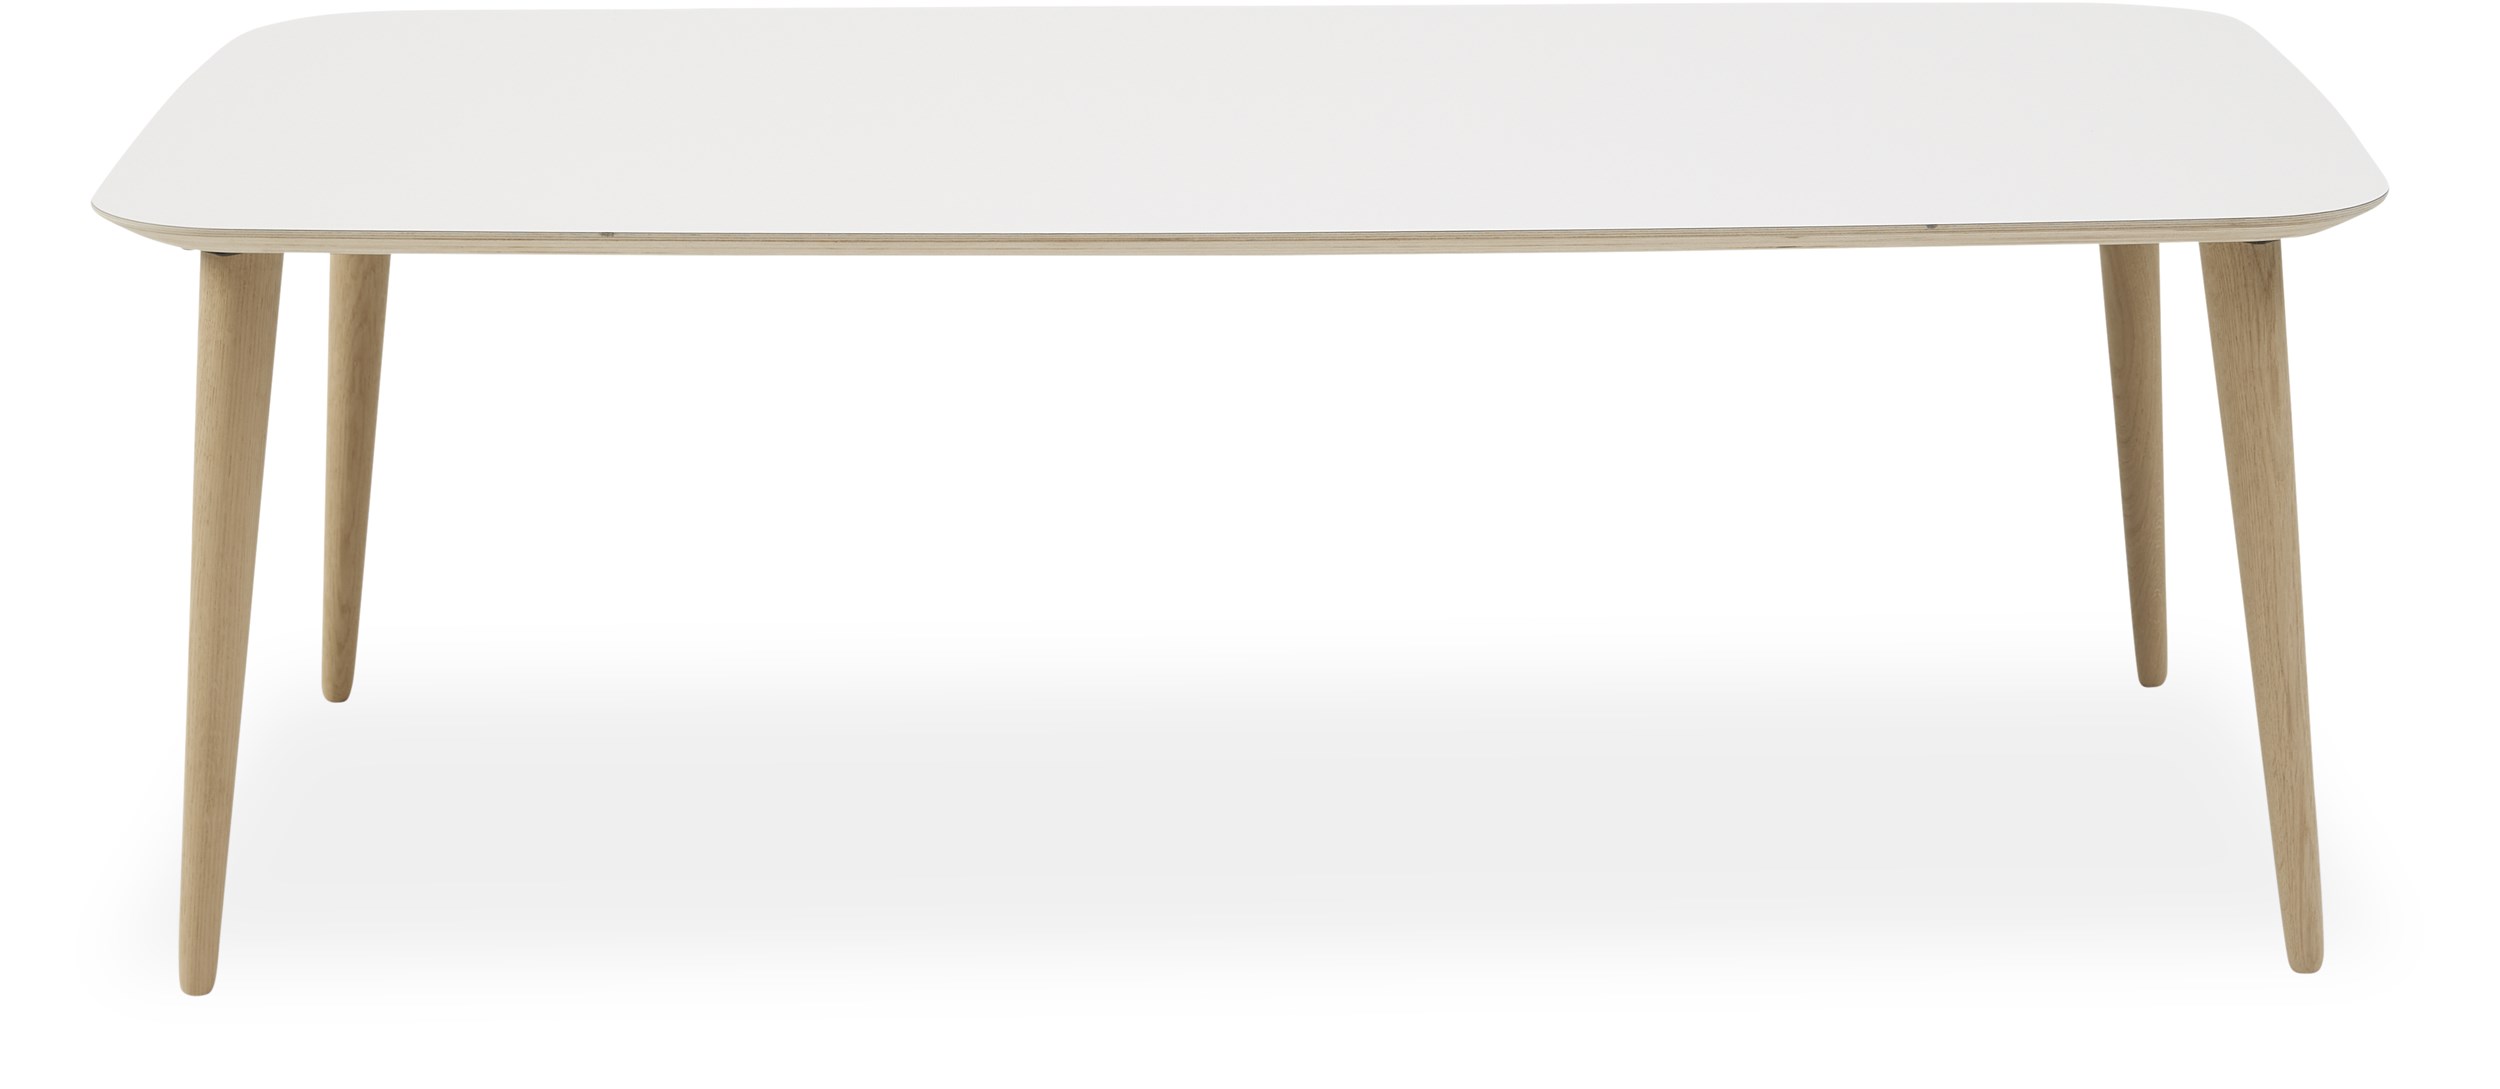 Norton Sofabord 68 x 45 x 128 cm - Top i hvid KER laminat, Krydsfinér og ben i massiv ubehandlet eg.